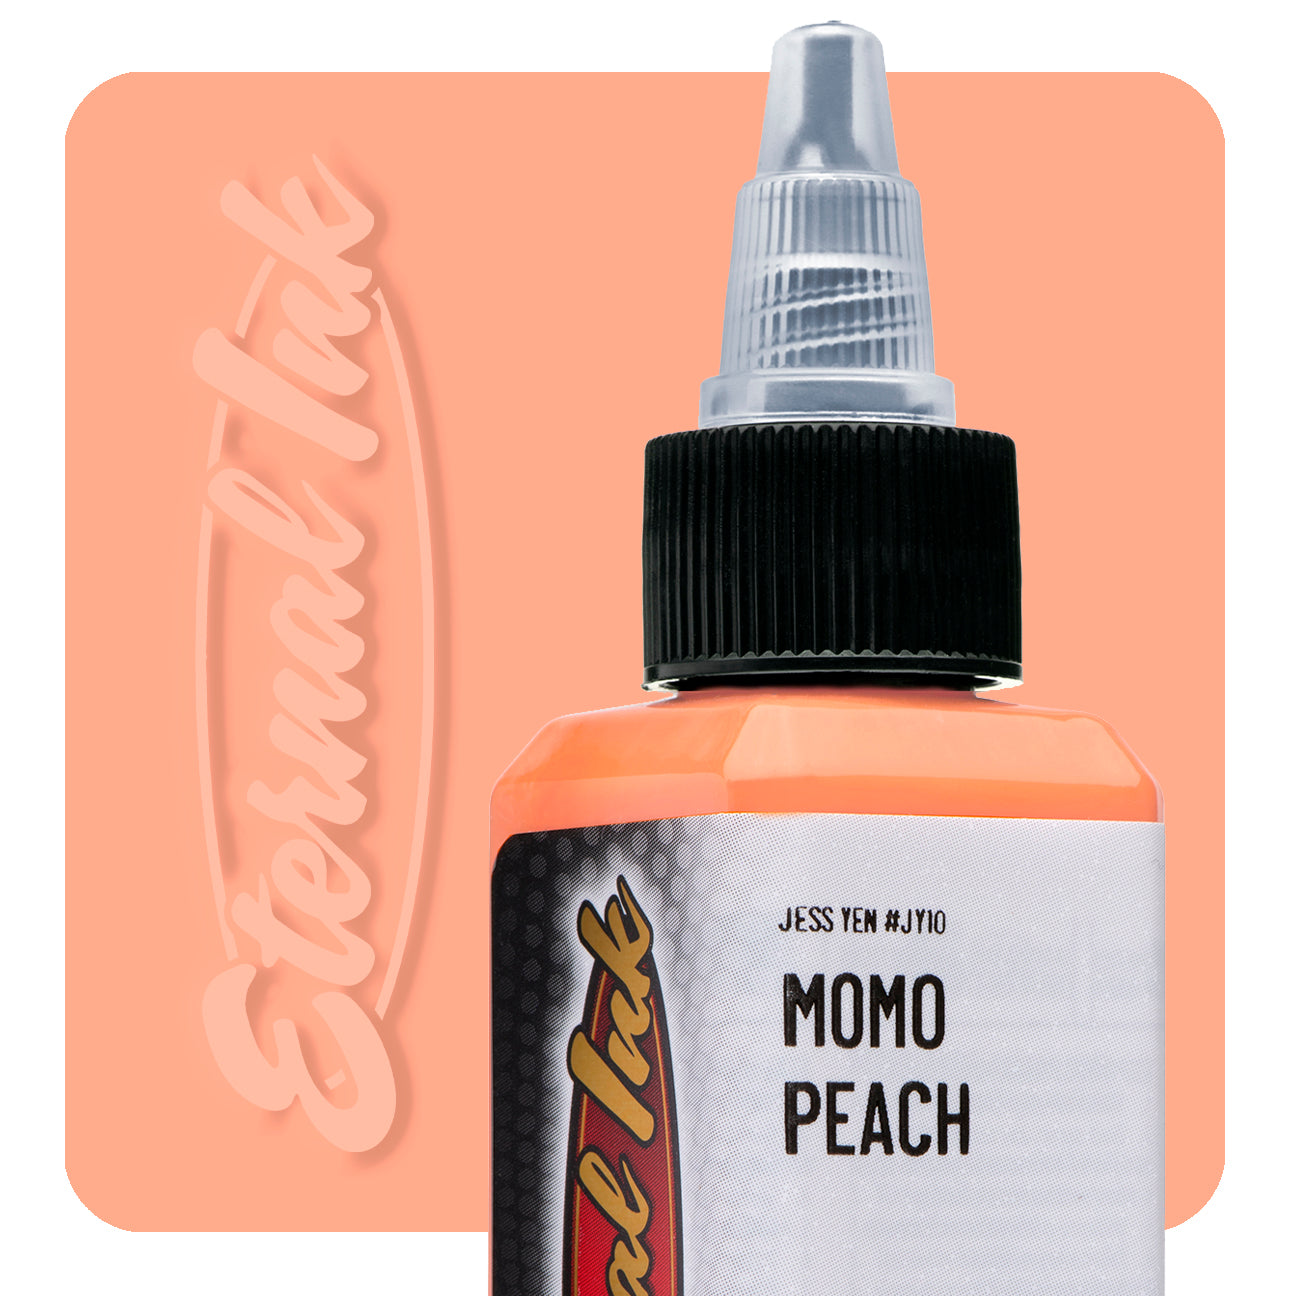 Momo Peach